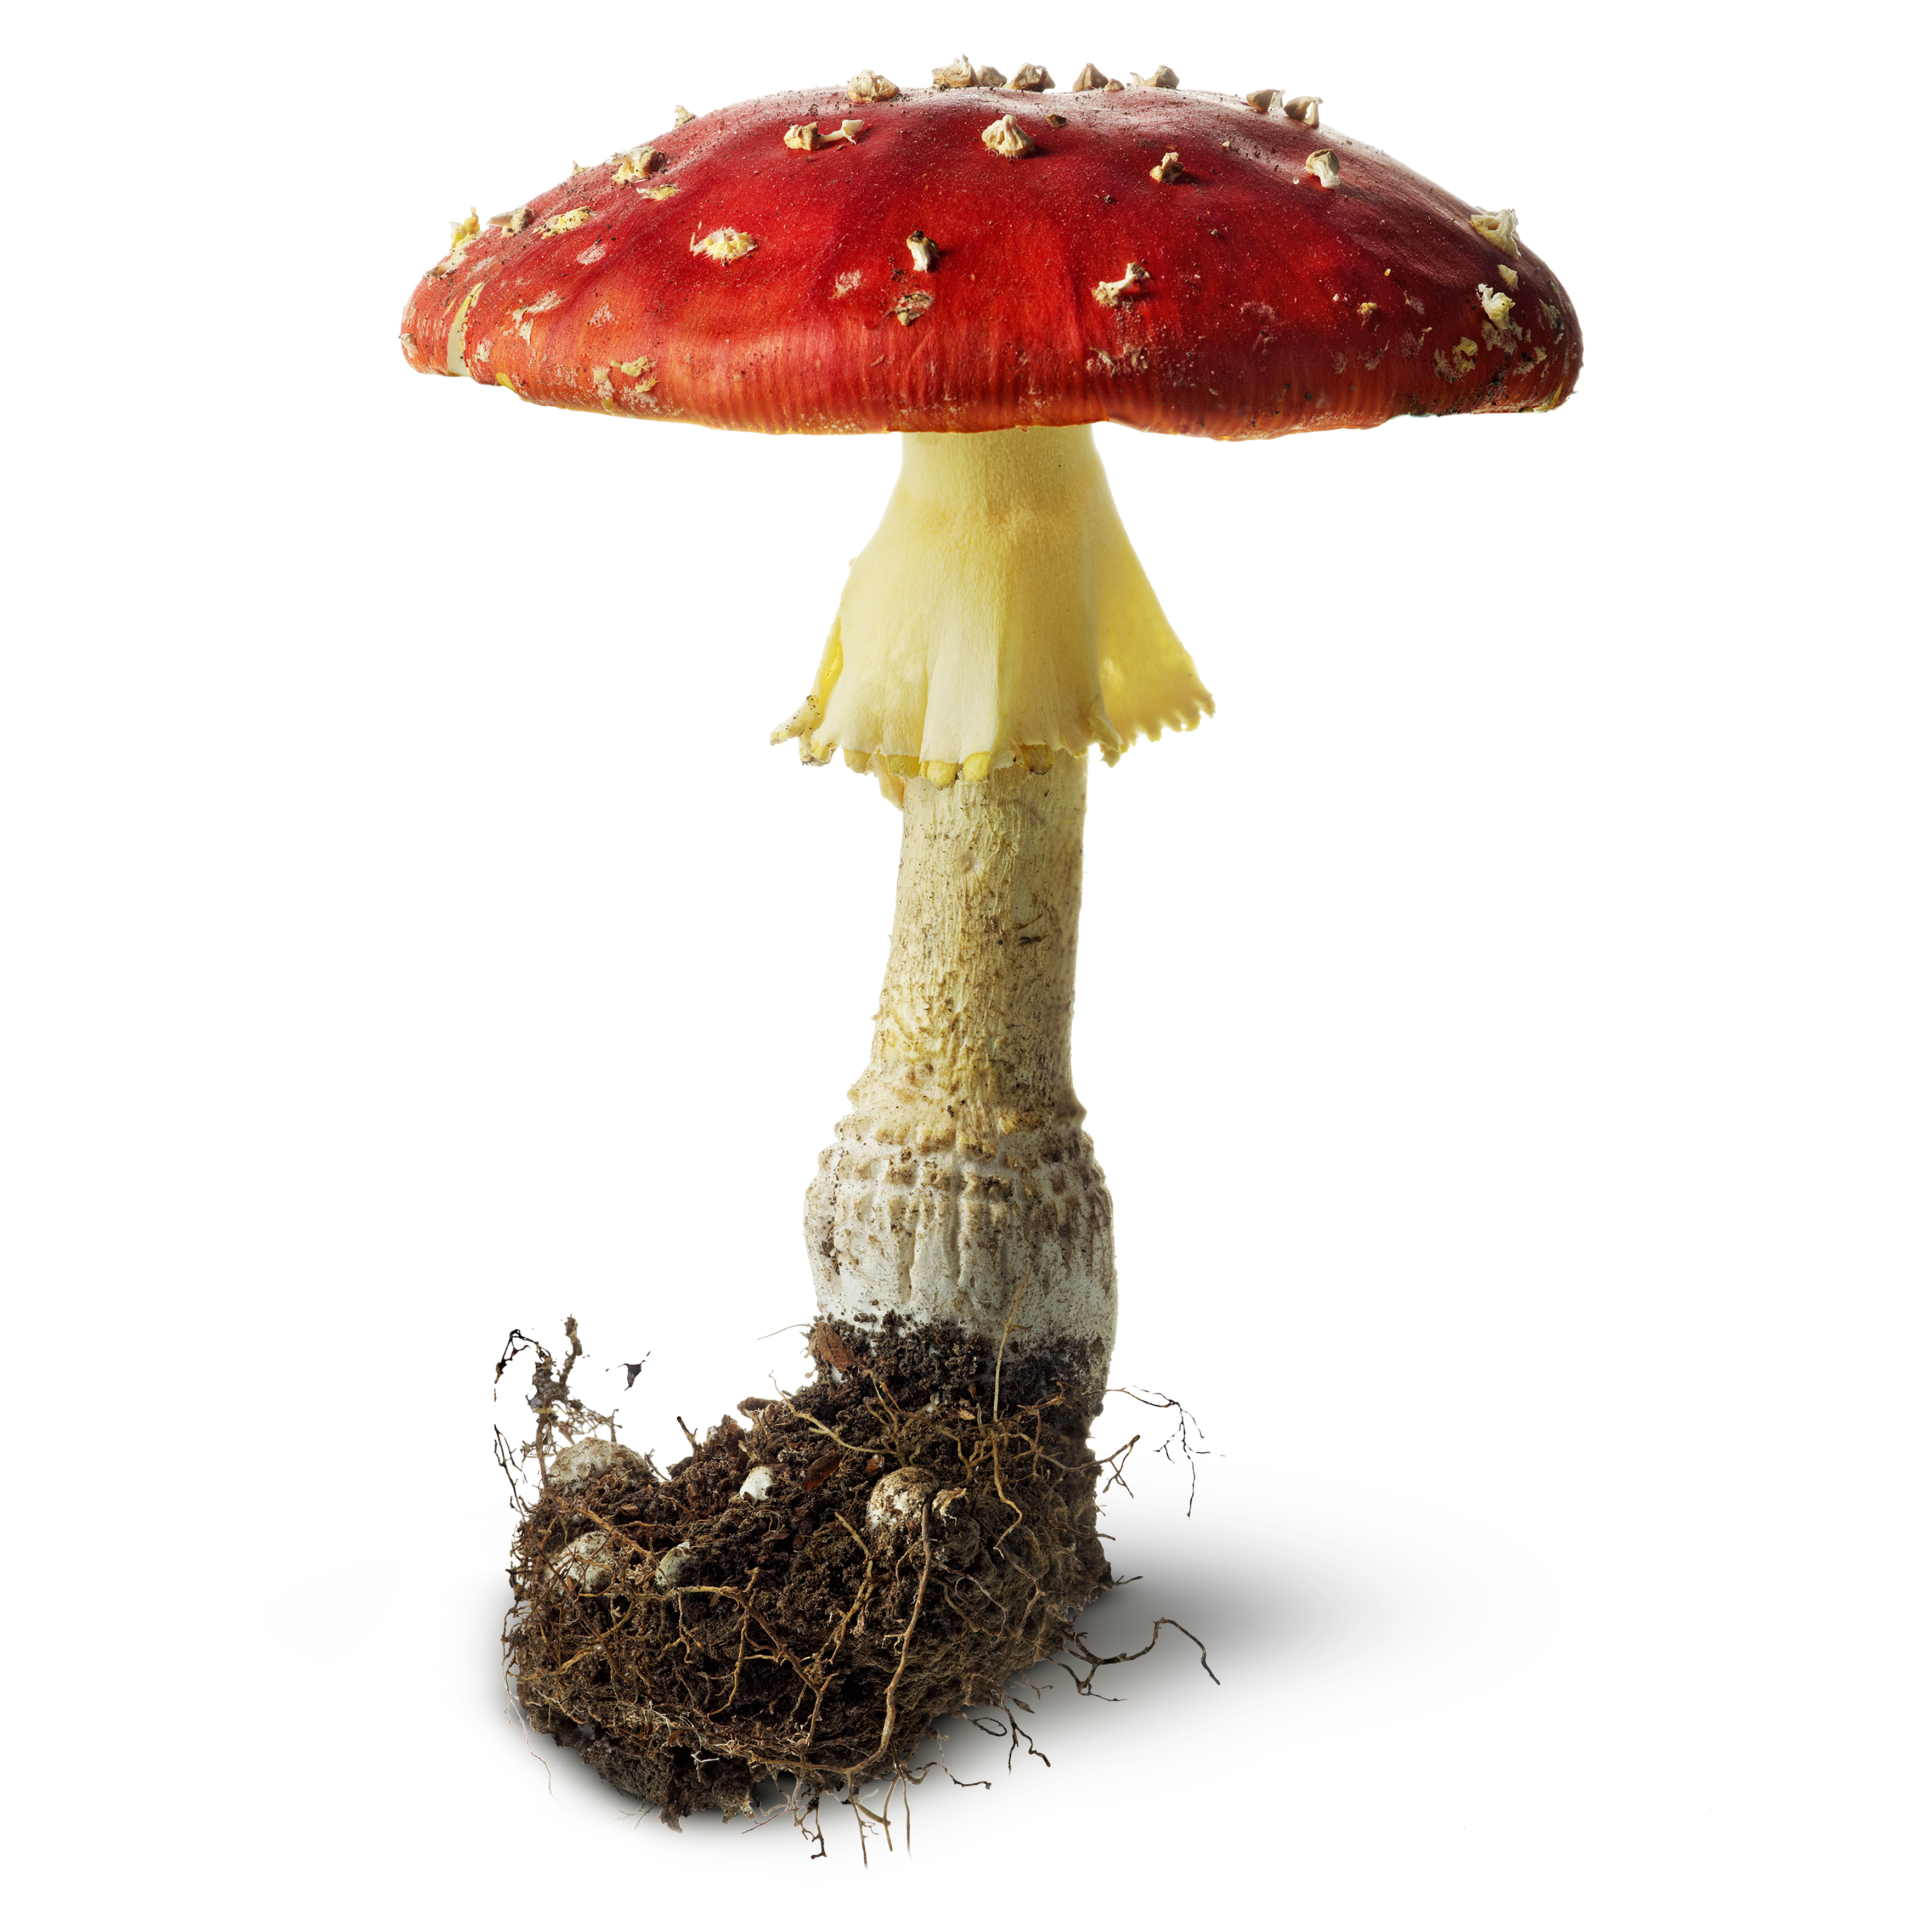 mushrooms toadstools mushroom fungus find #9080